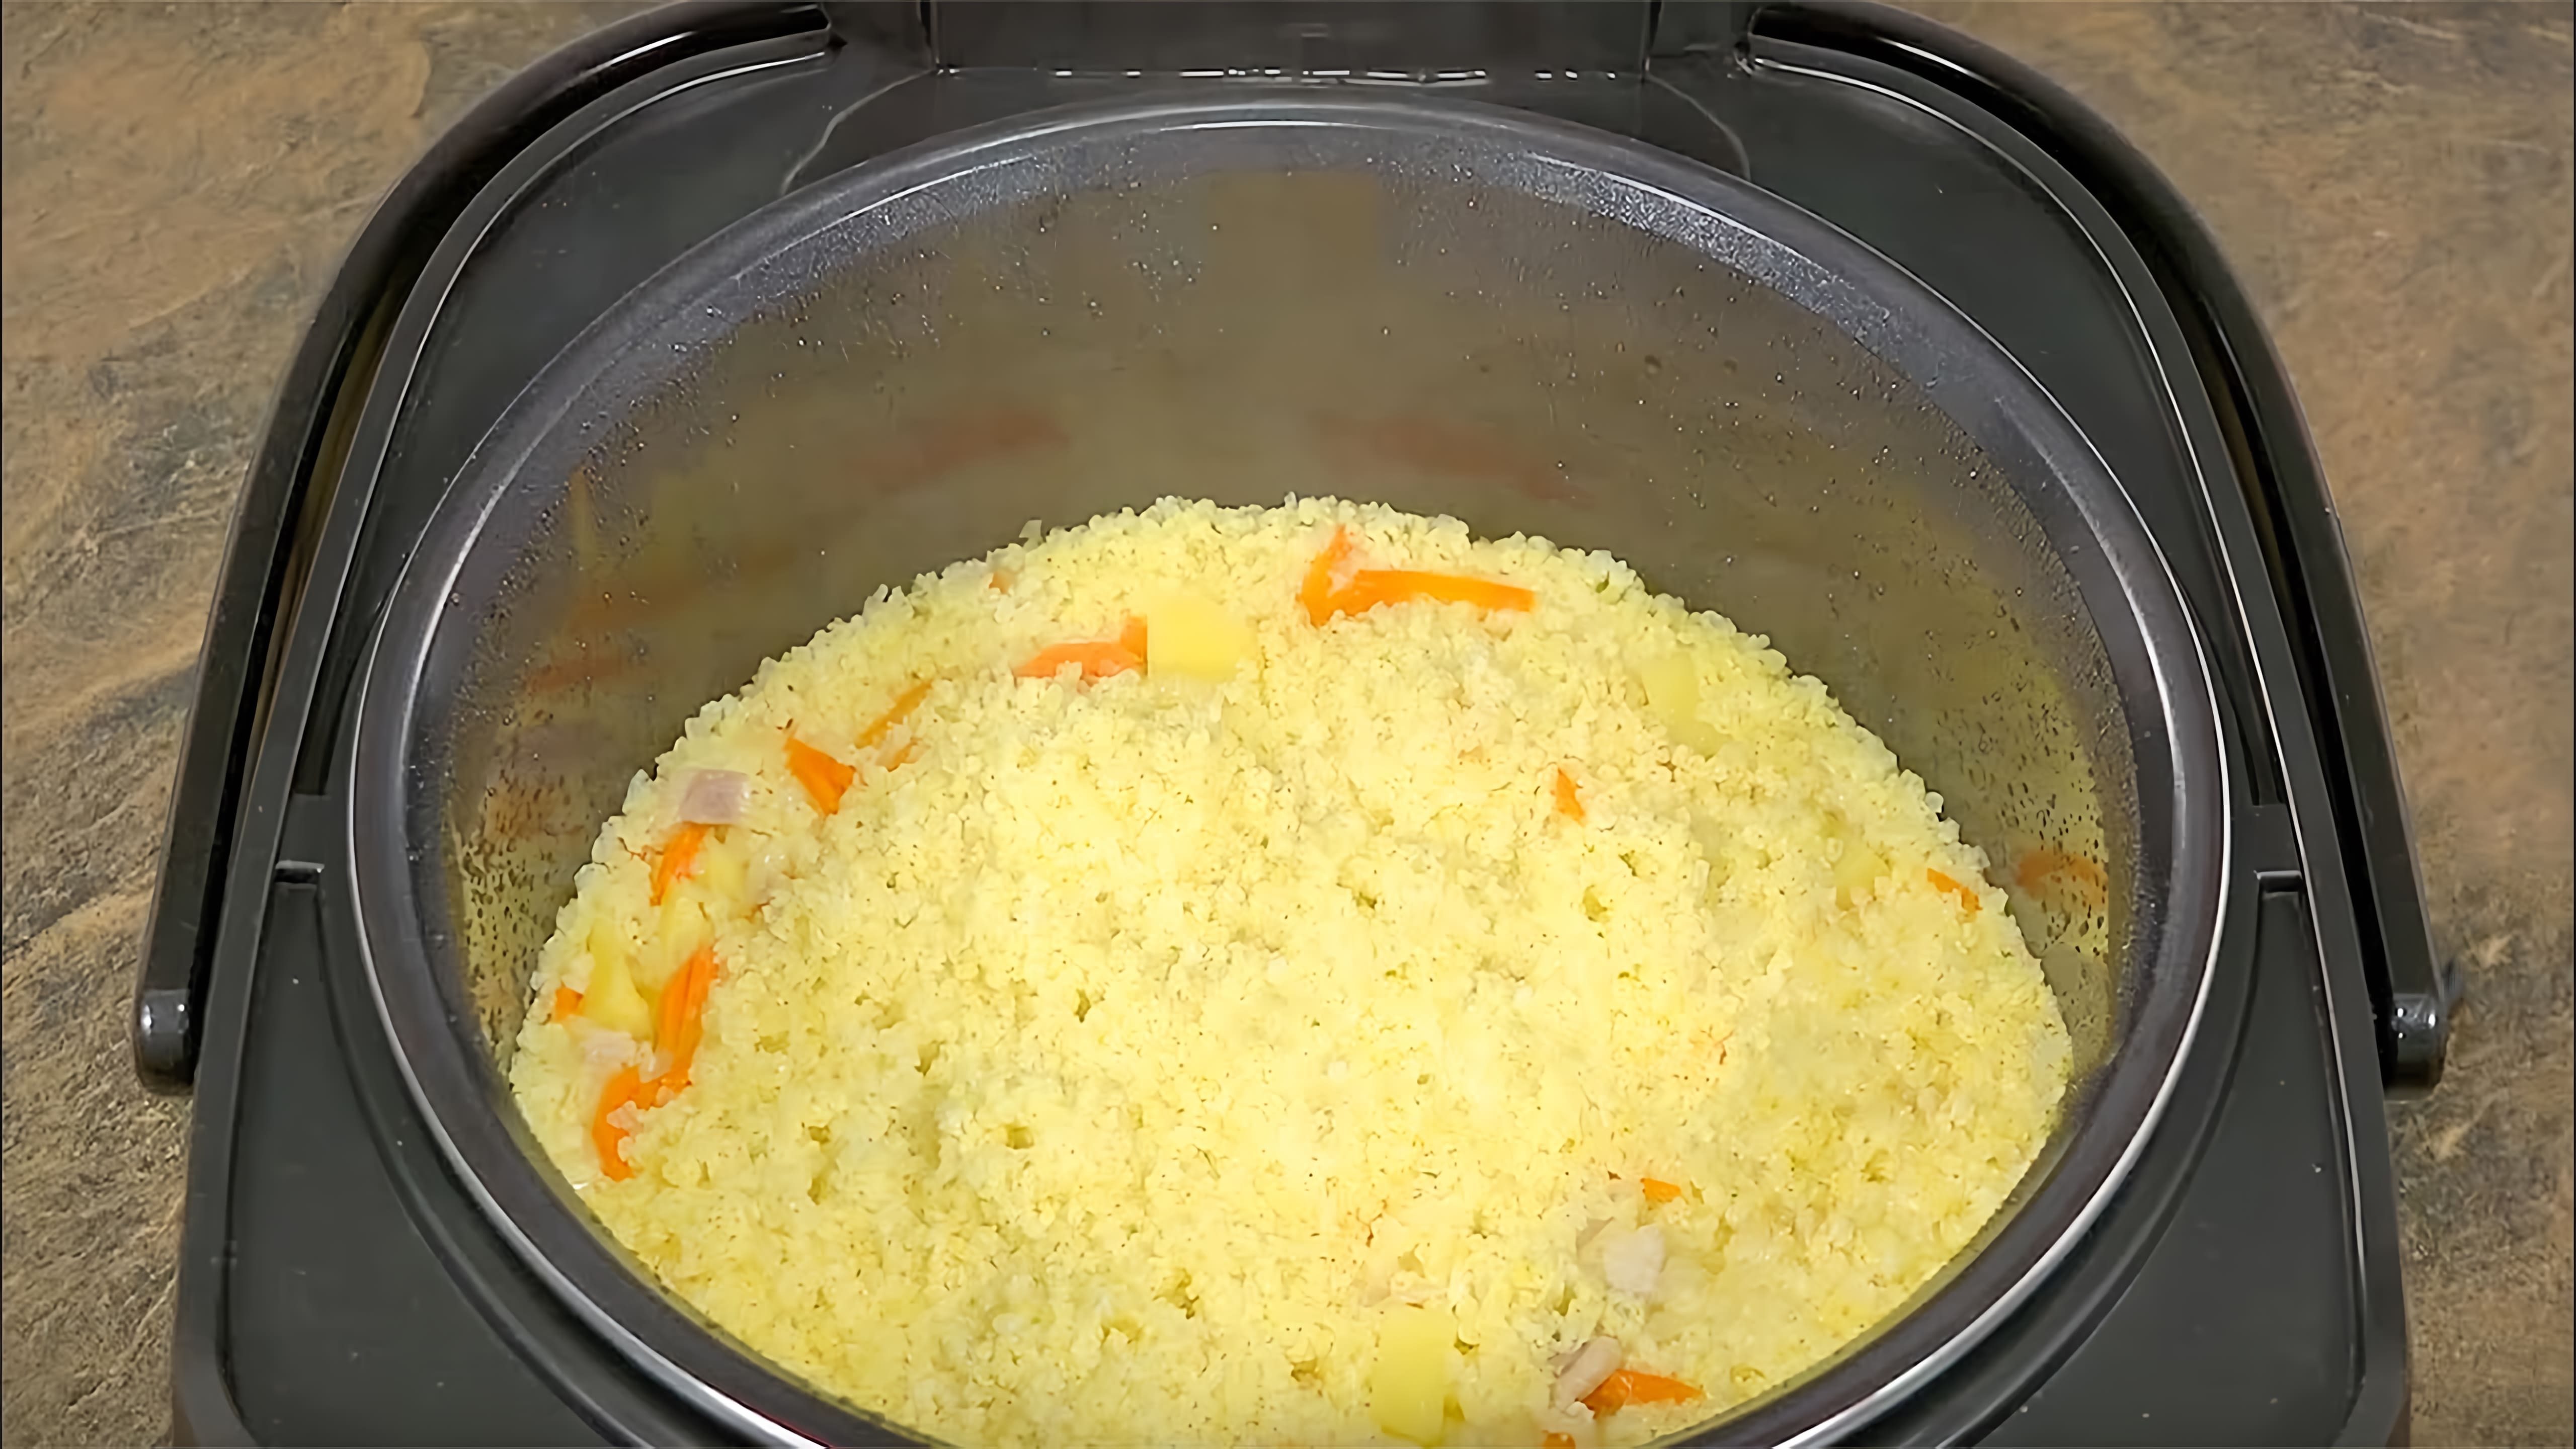 Видео: ТРИ РЕЦЕПТА для тех, кто СИЛЬНО ЗАНЯТ!  Как приготовить ужин в МУЛЬТИВАРКЕ